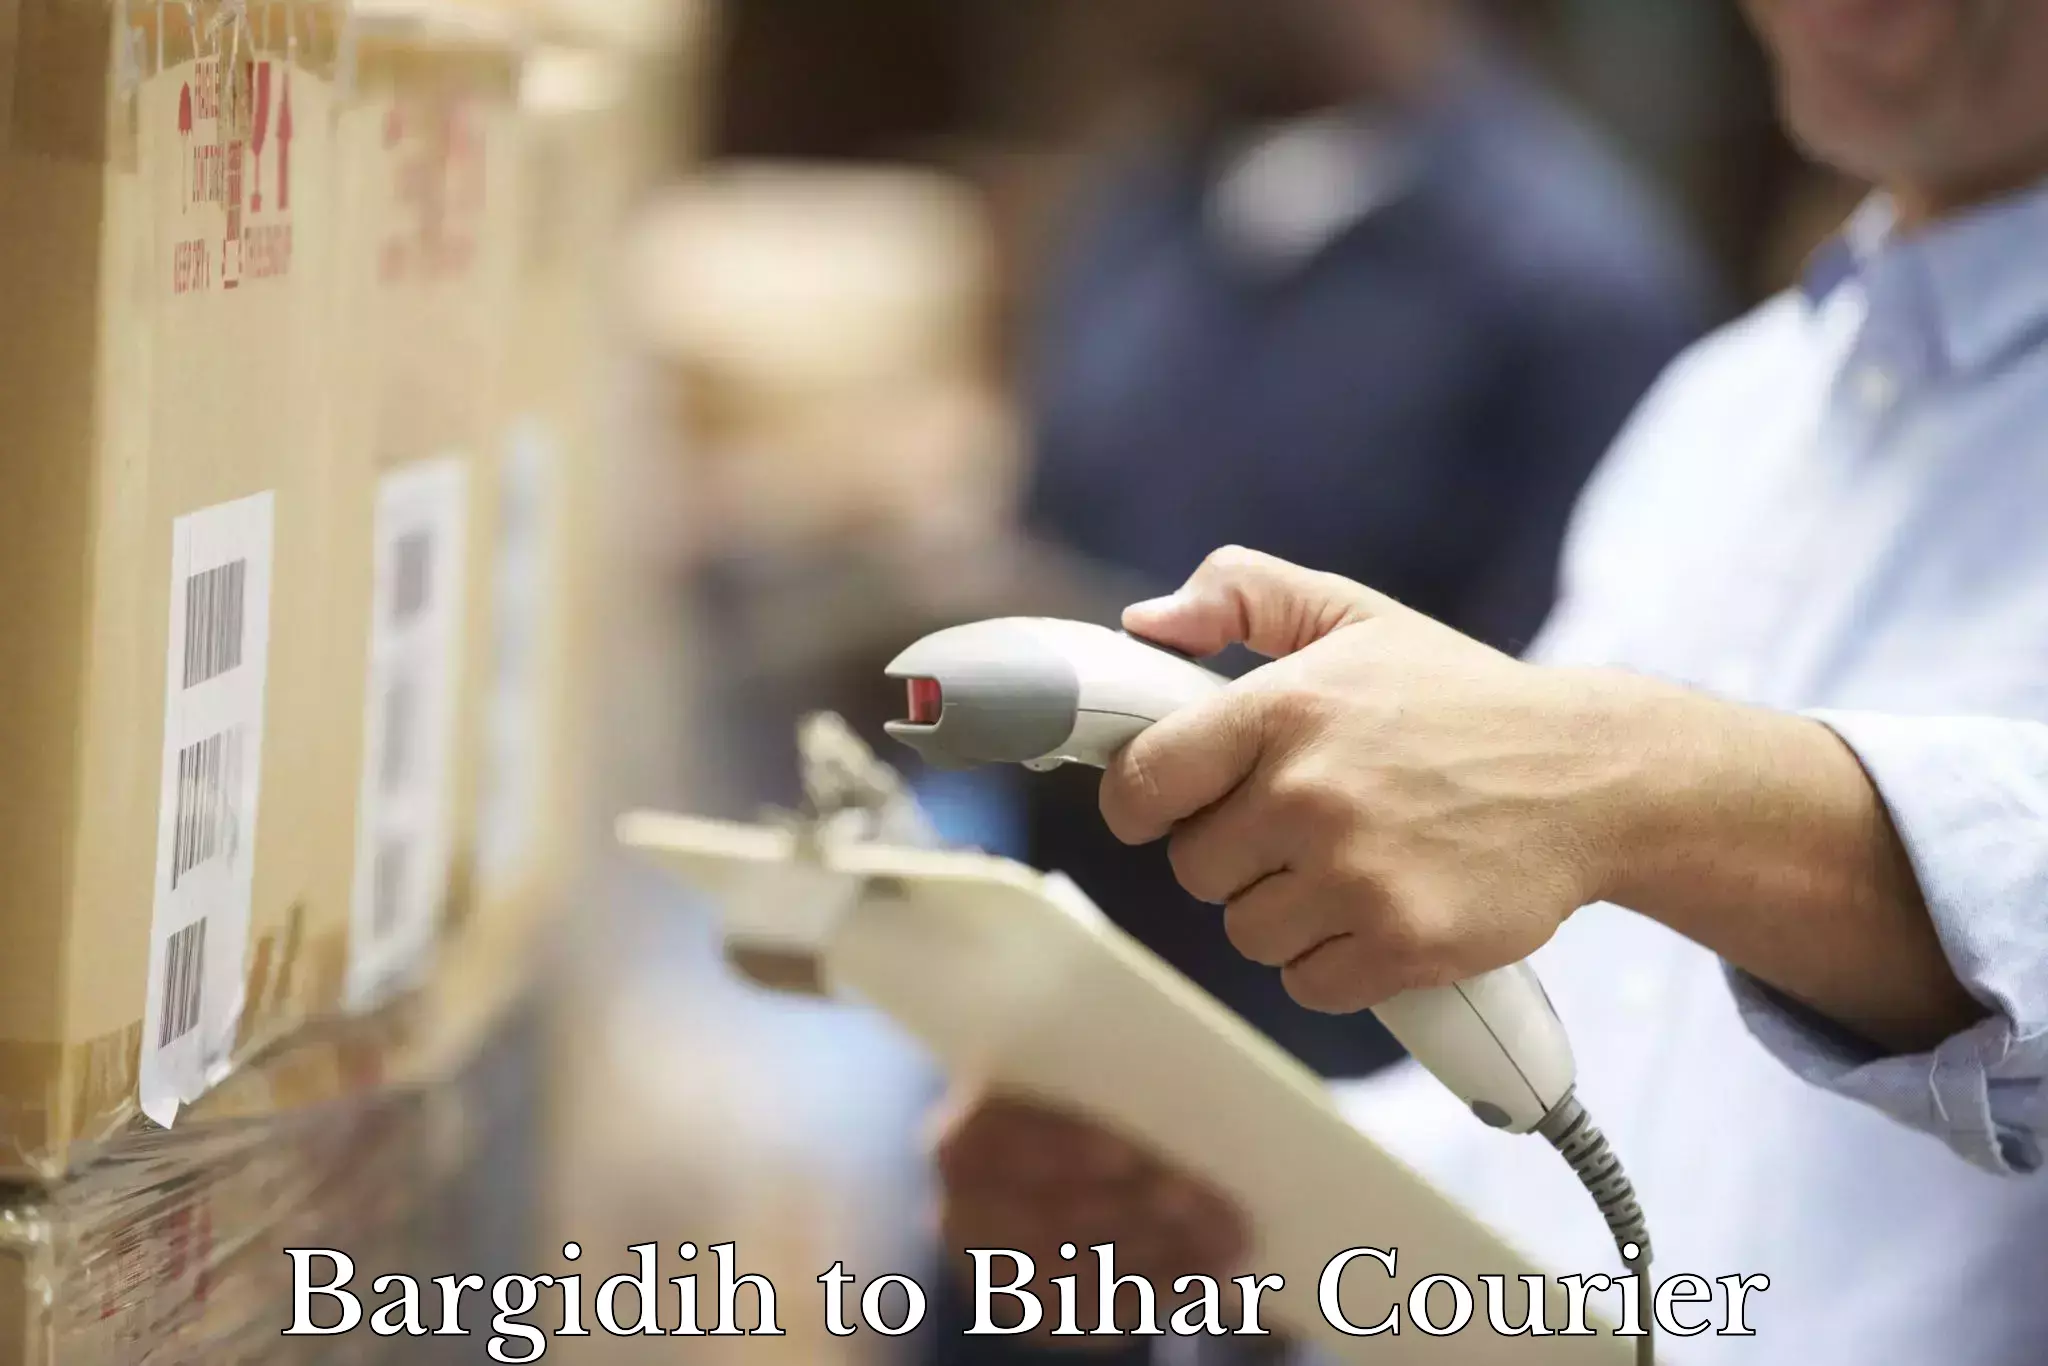 Urgent courier needs Bargidih to Dinara